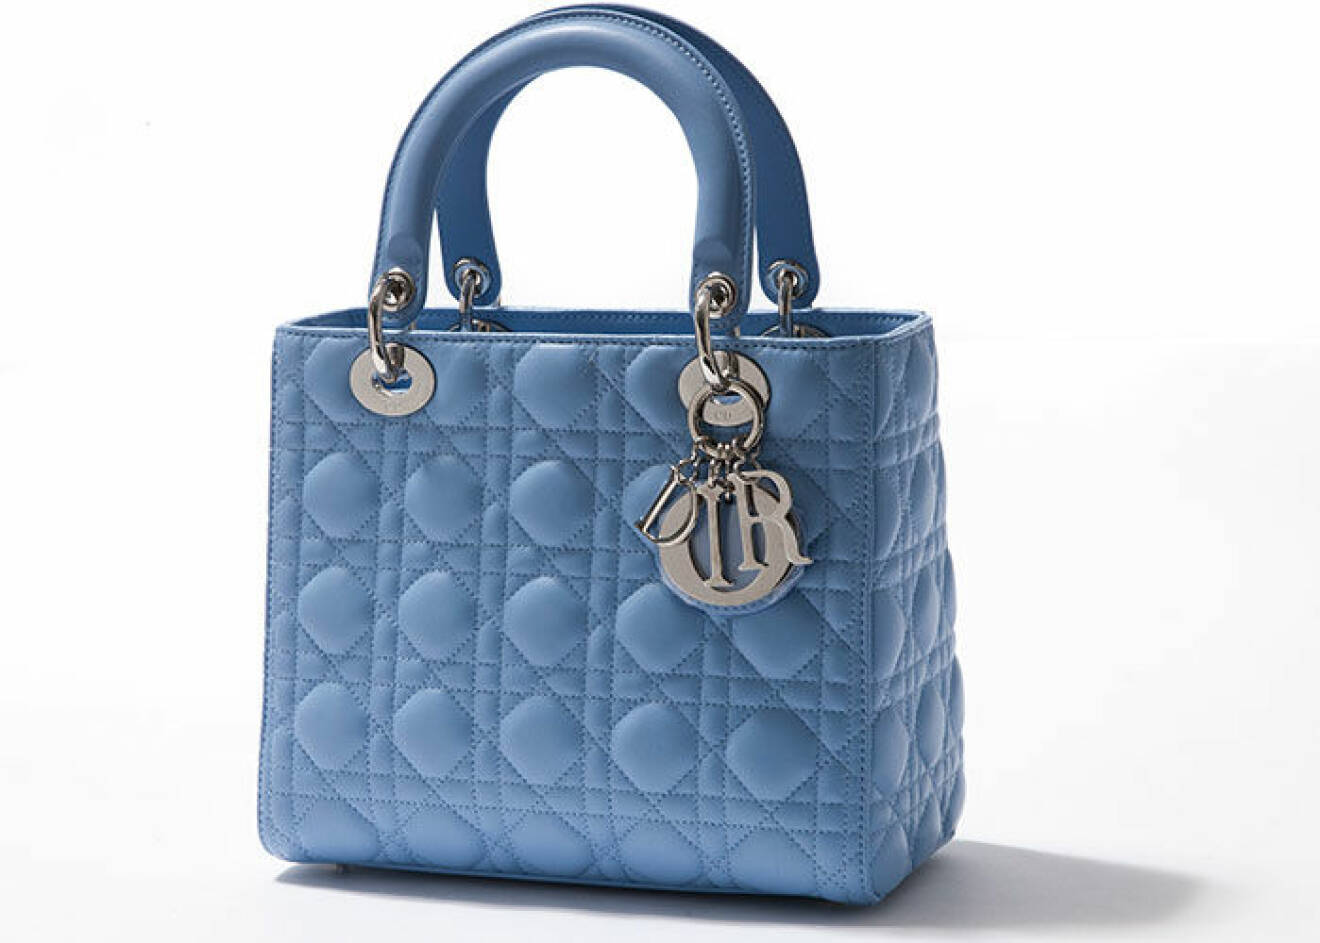 En Lady Dior väska i blått